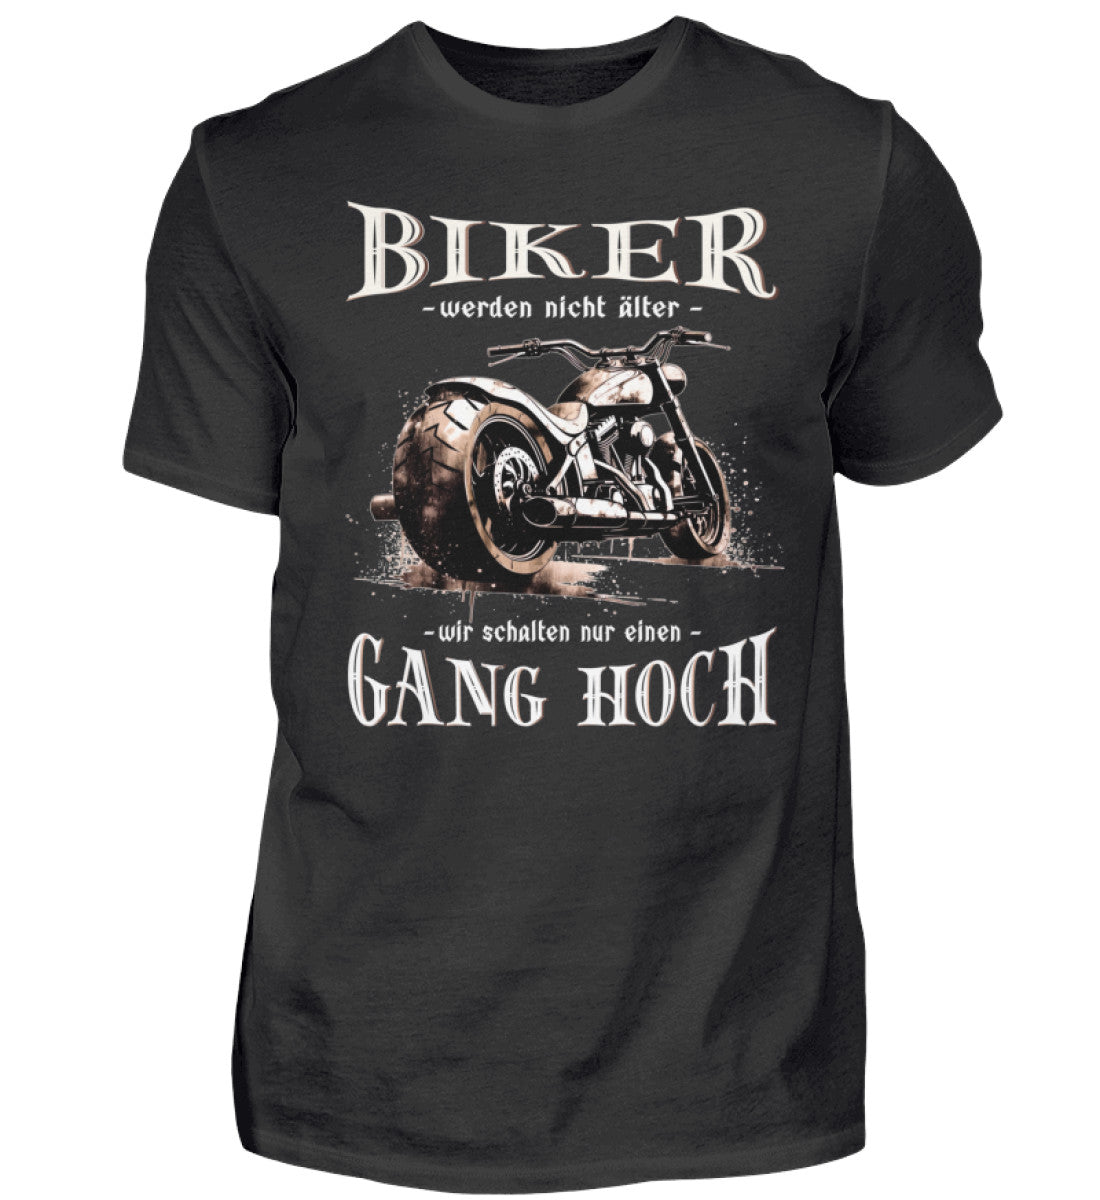 Ein Biker T-Shirt für Motorradfahrer von Wingbikers mit dem Aufdruck, Biker werden nicht älter - Wir schalten nur einen Gang hoch! - in schwarz.